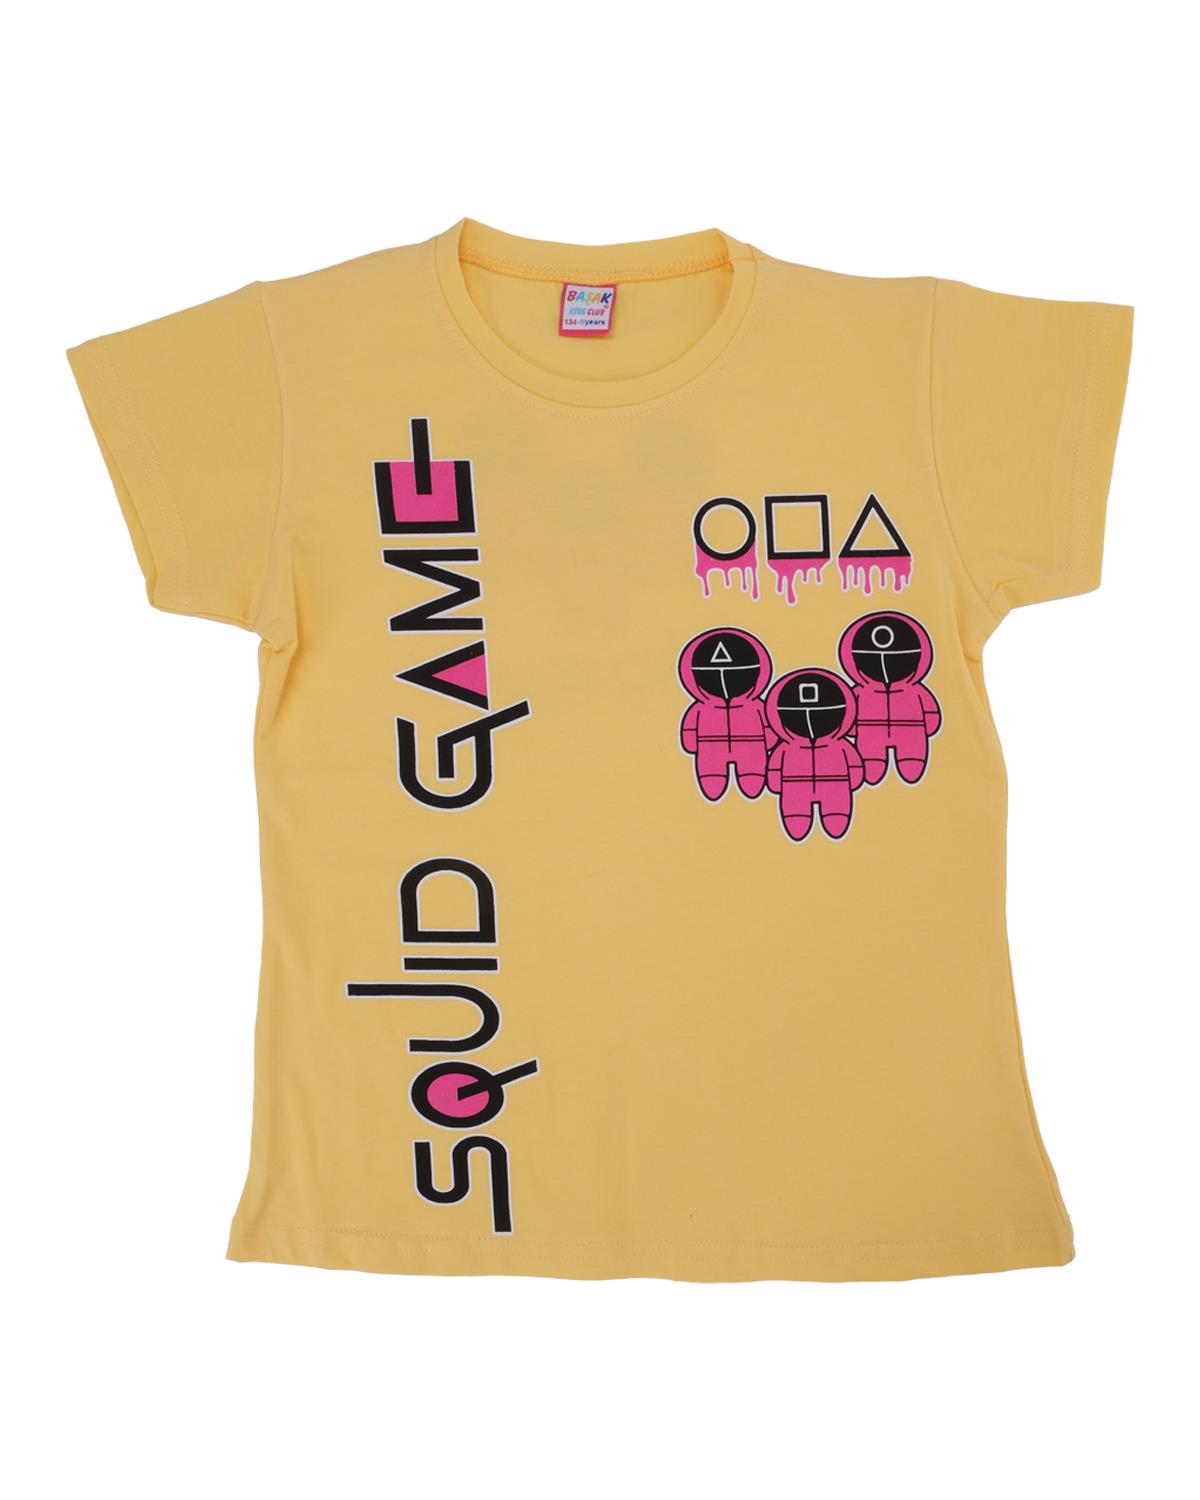 Kız Çocuk Squid Game Baskılı Penye Likralı Kısa Kol T-Shirt